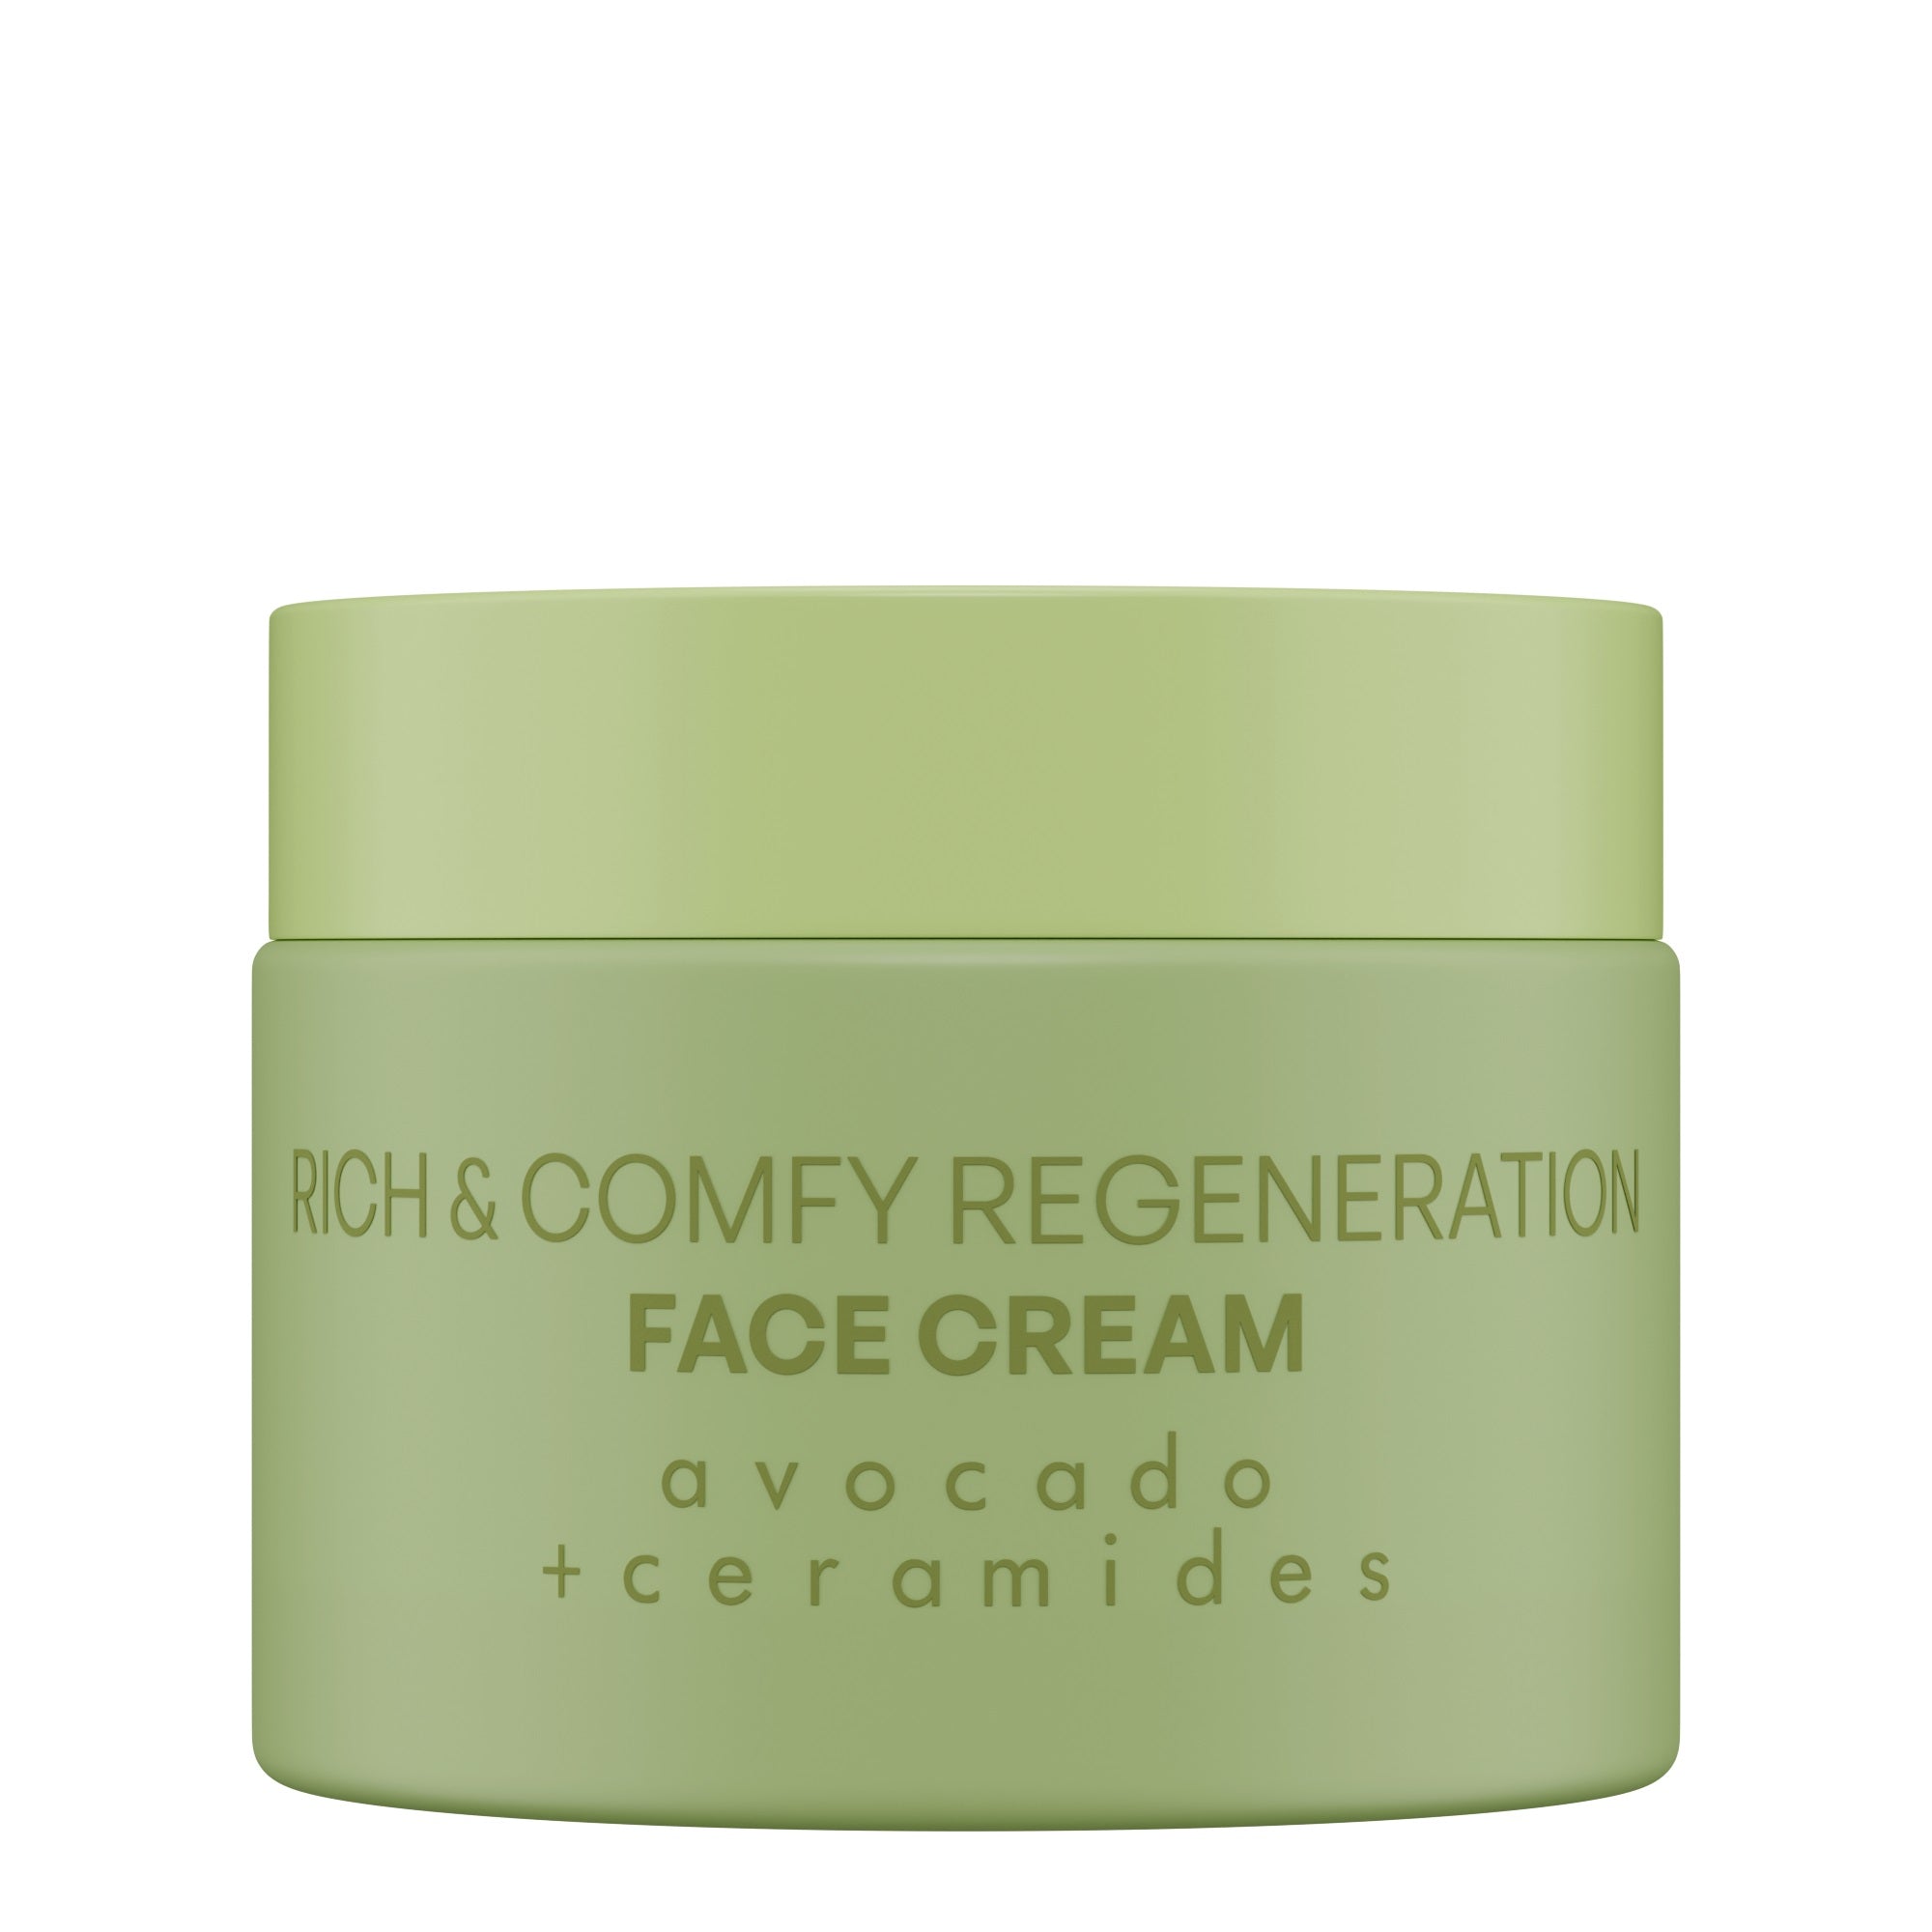 Nacomi Rich & comfy regeneration AVOCADO + CERAMIDES Face Cream 40ml